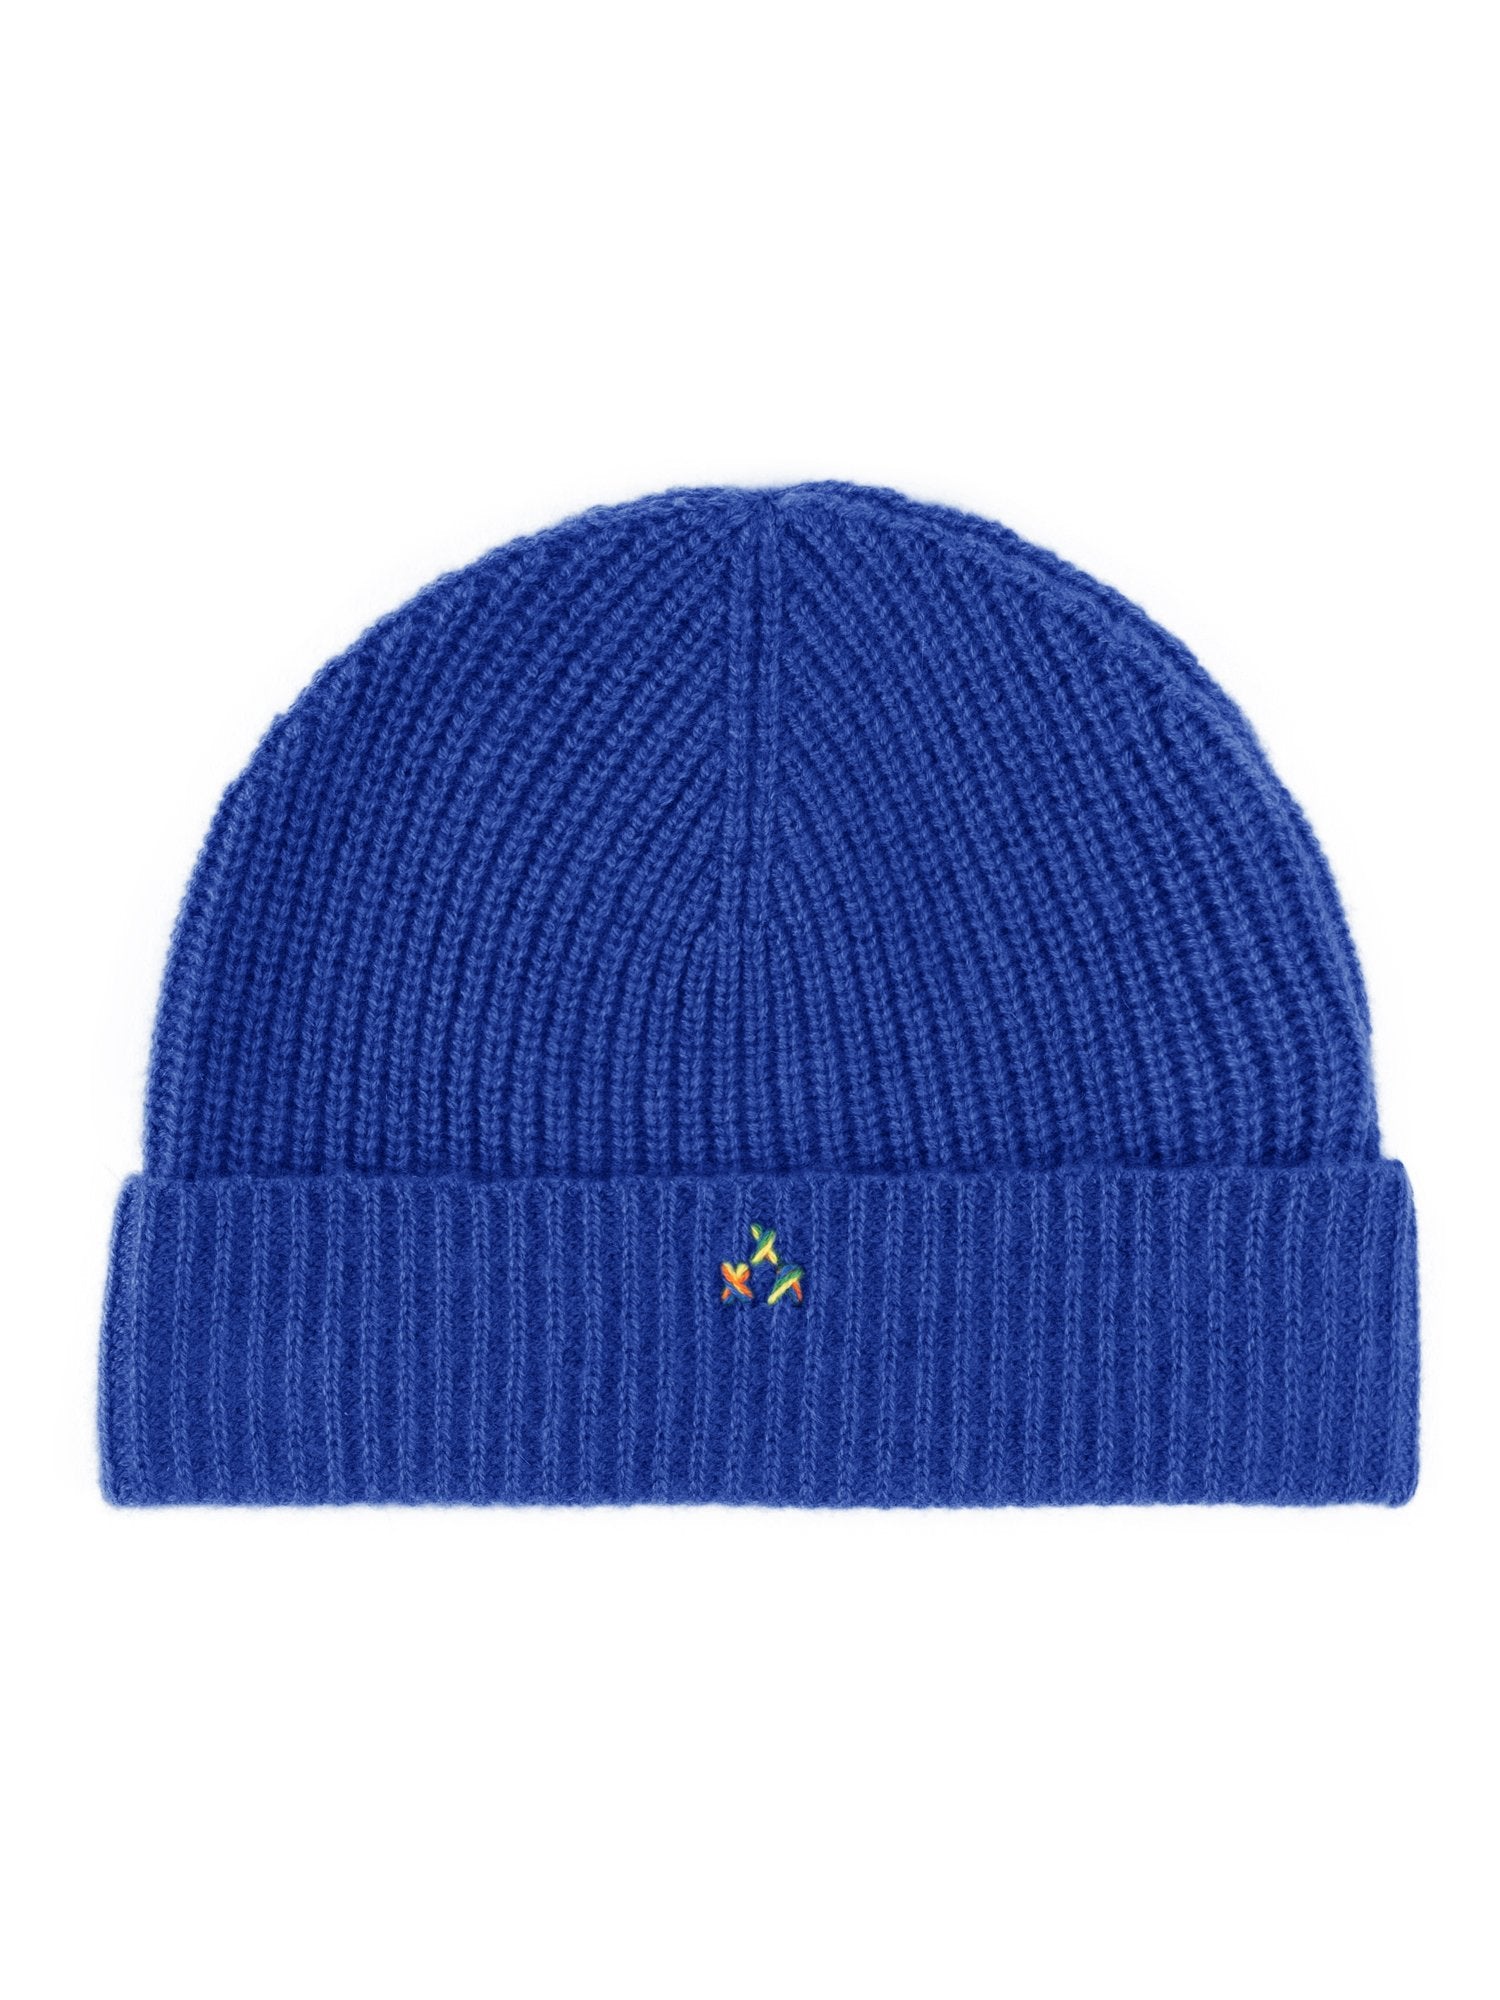 RAINBOW CASHMERE Gestrickte Mütze mit attraktivem einfarbigem Design | königsblau